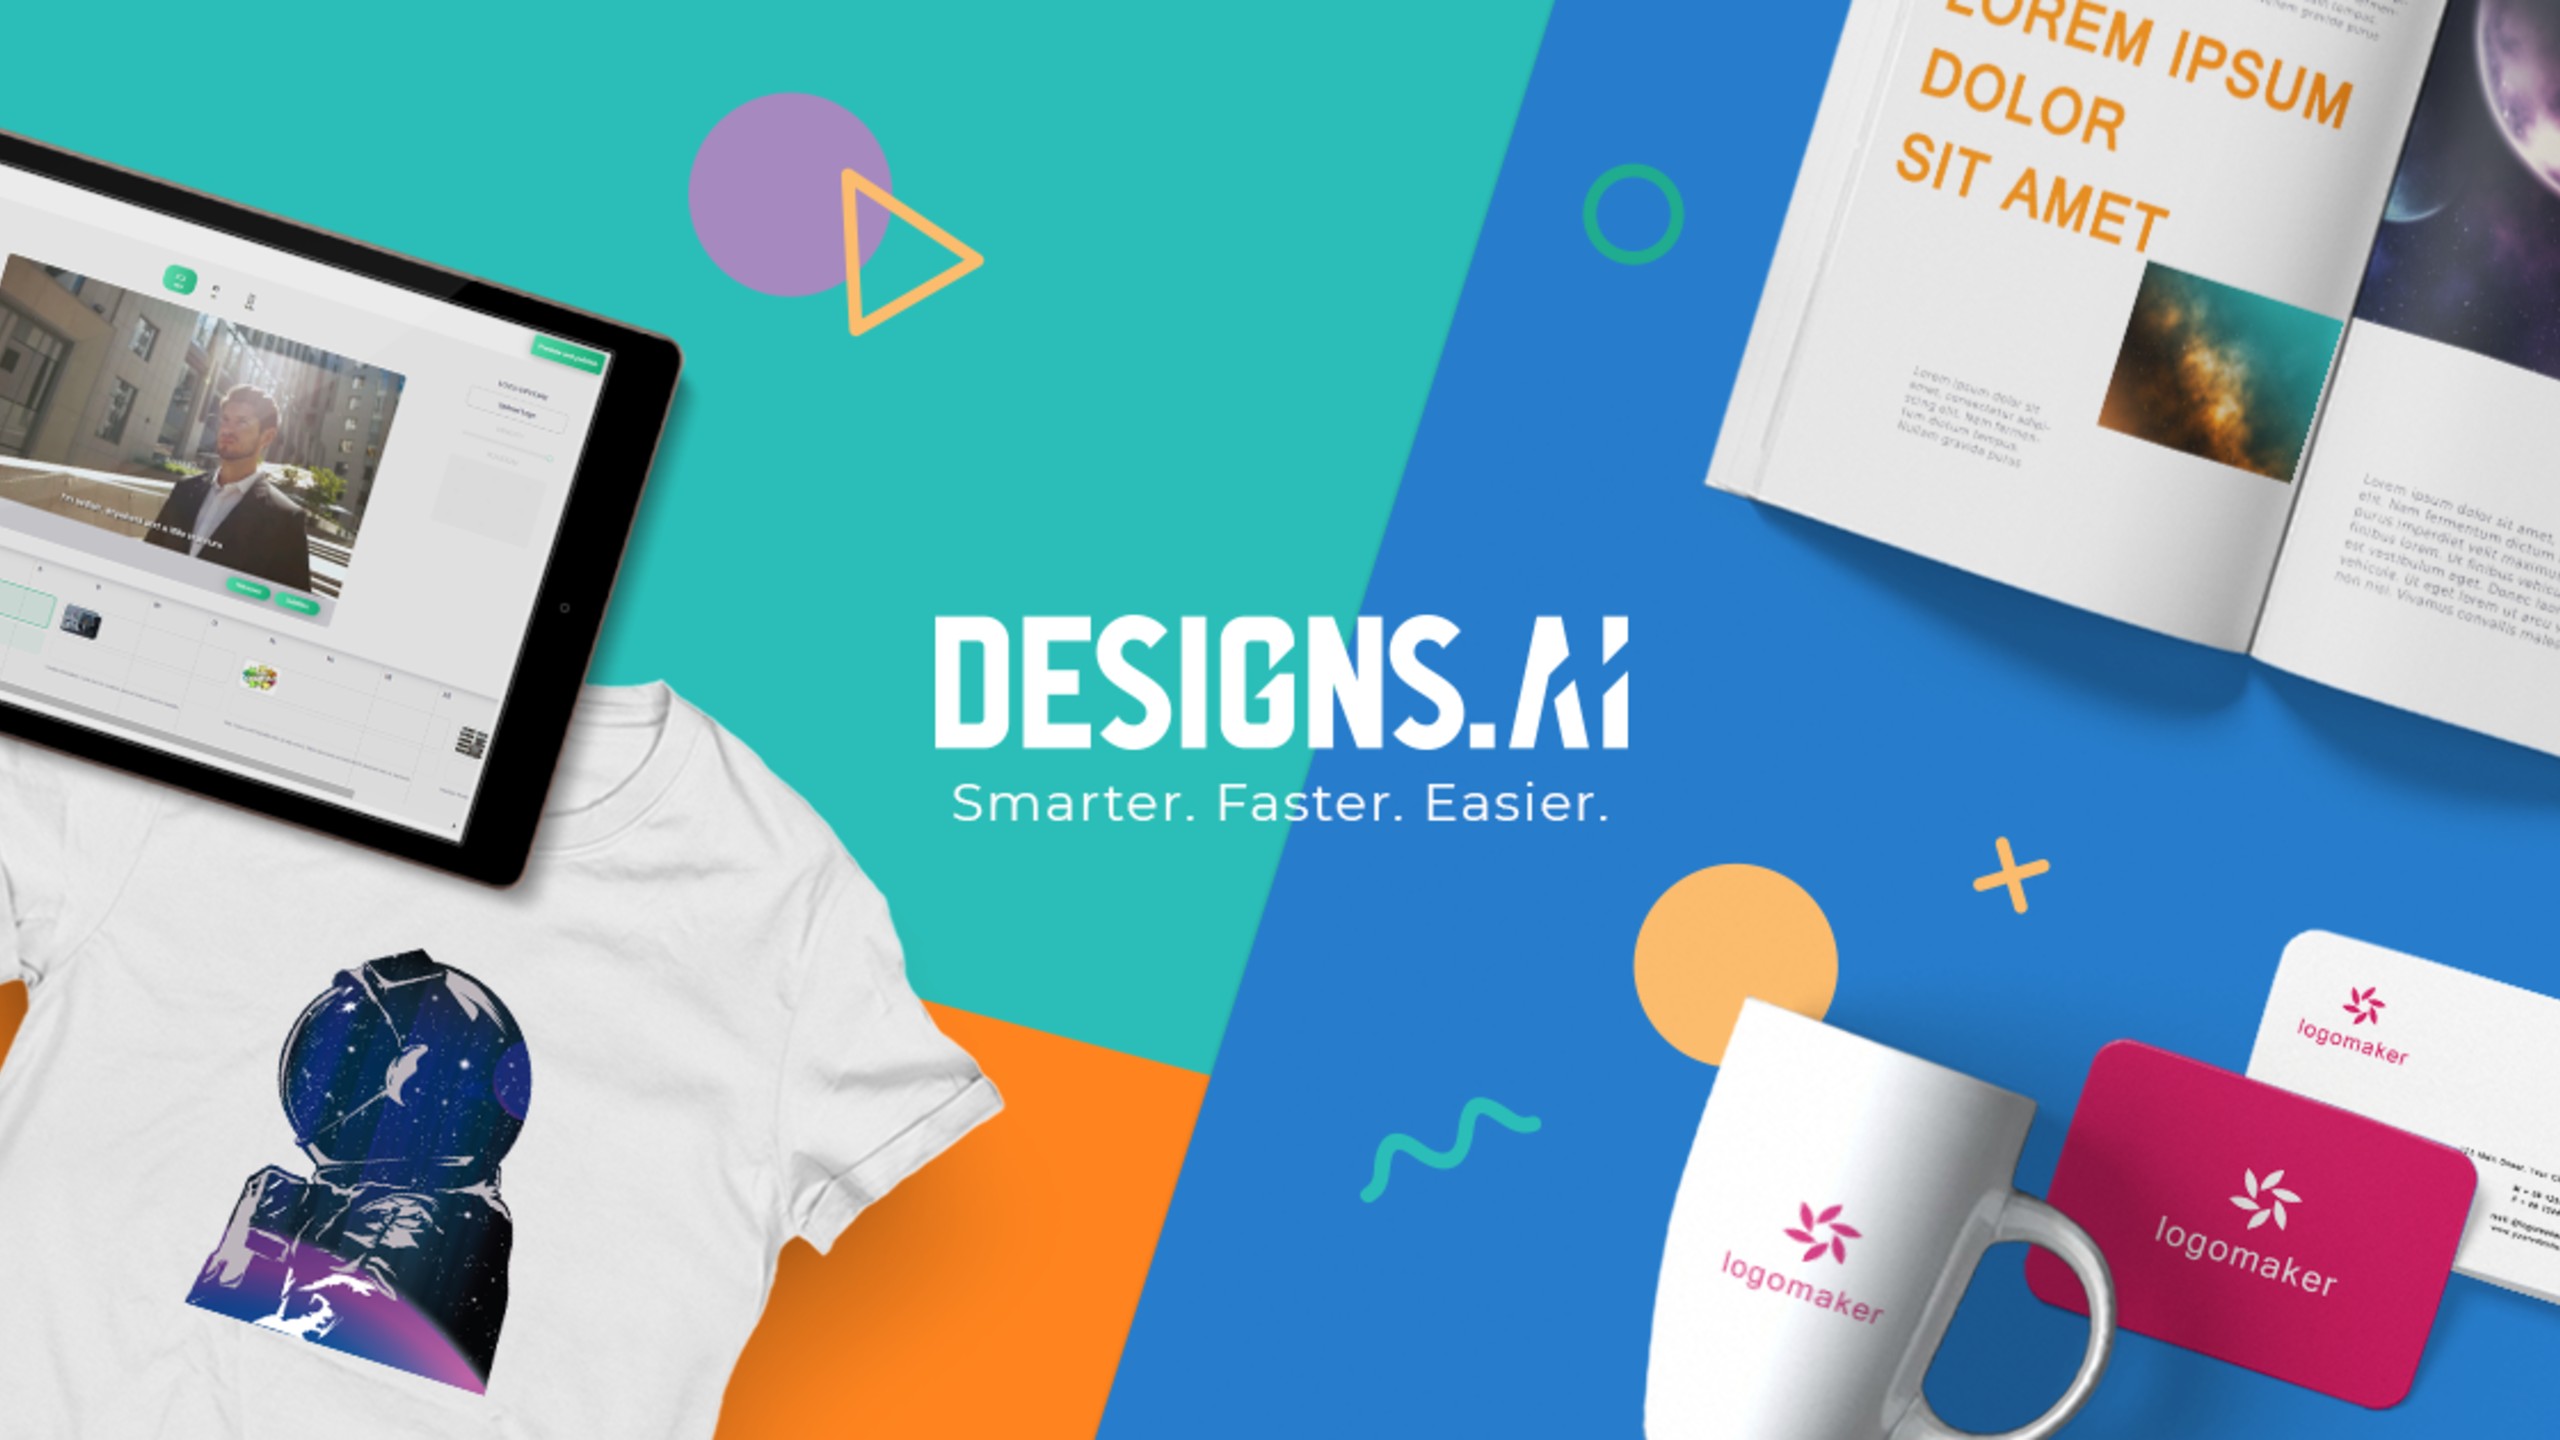 DesignS.ai - Créer des logos, des vidéos, des bannières, des maquettes avec l'IA en 2 minutes